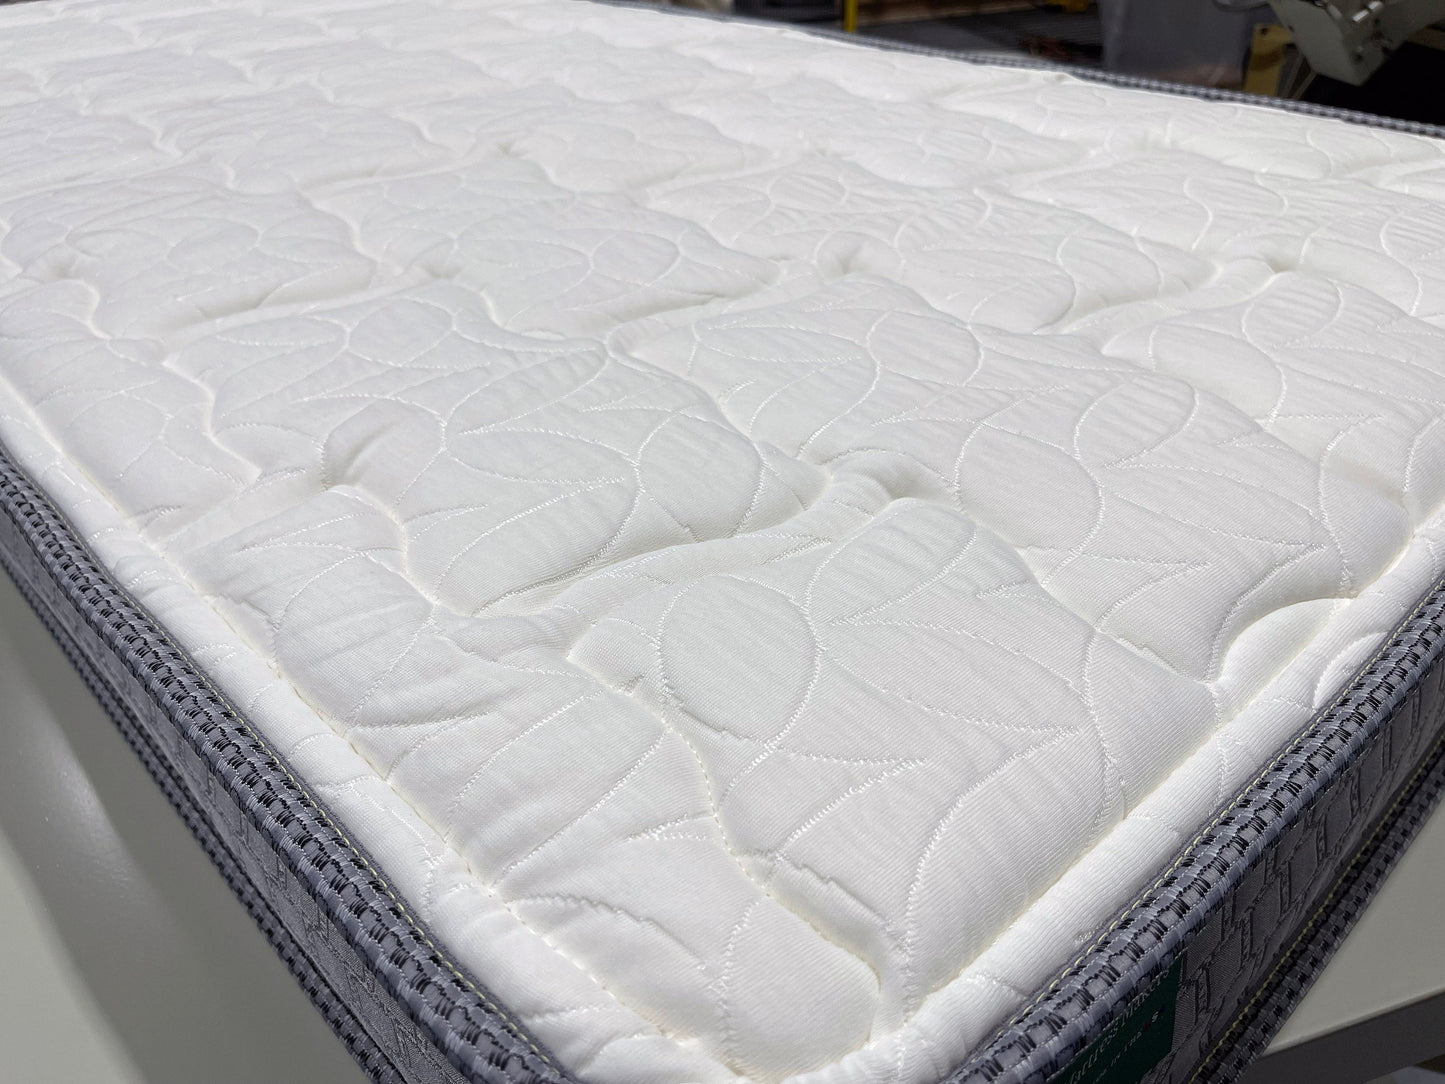 Cape w/ Talalay Latex - 57.5" x 77.5" mattress w/ 4 notched corners